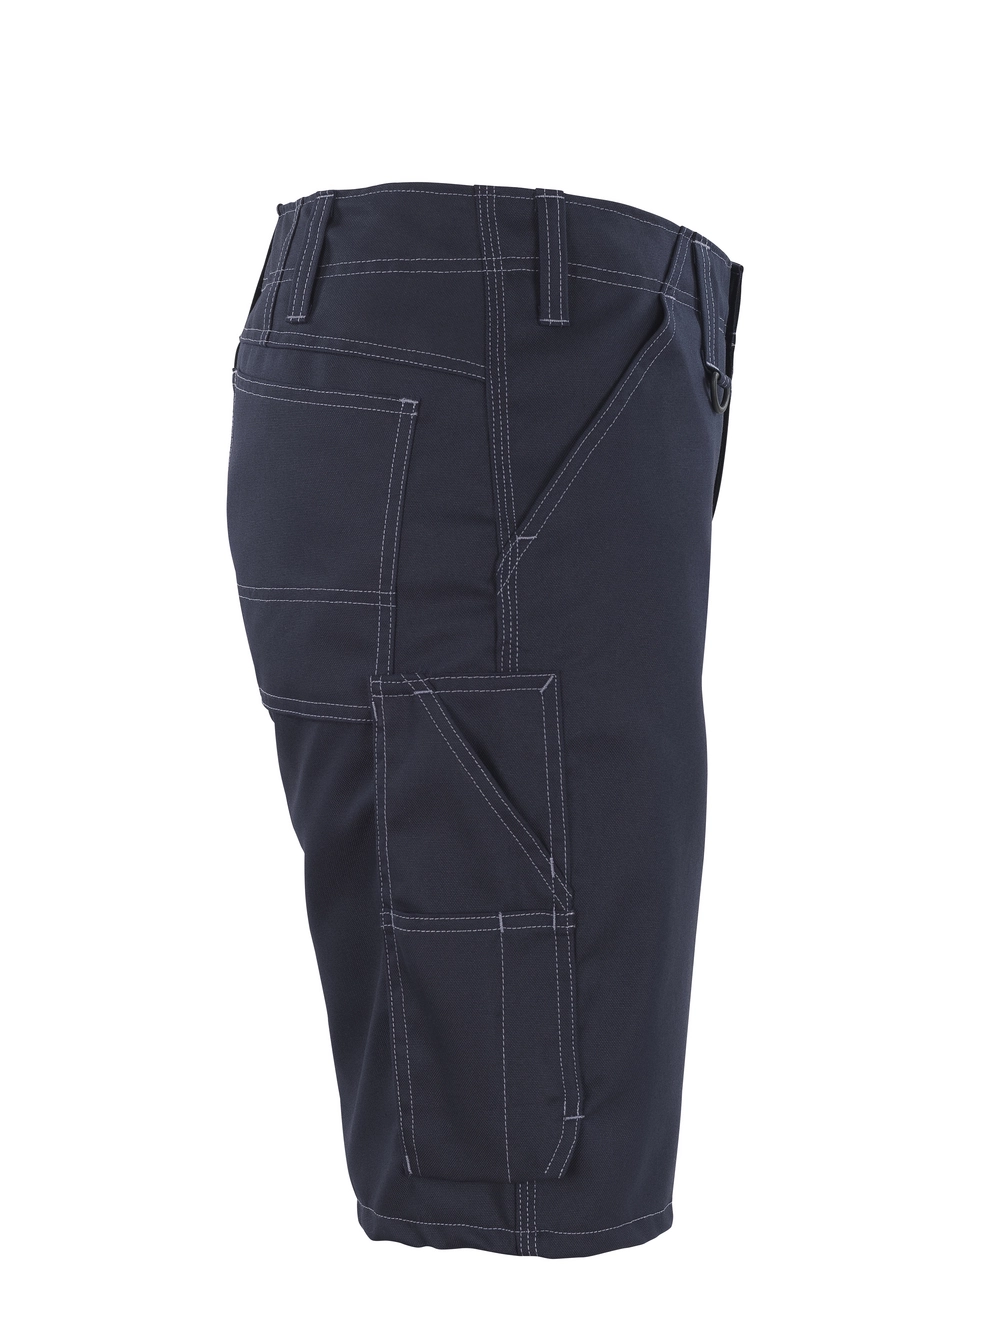 MASCOT® Charleston Shorts Größe C43, schwarzblau